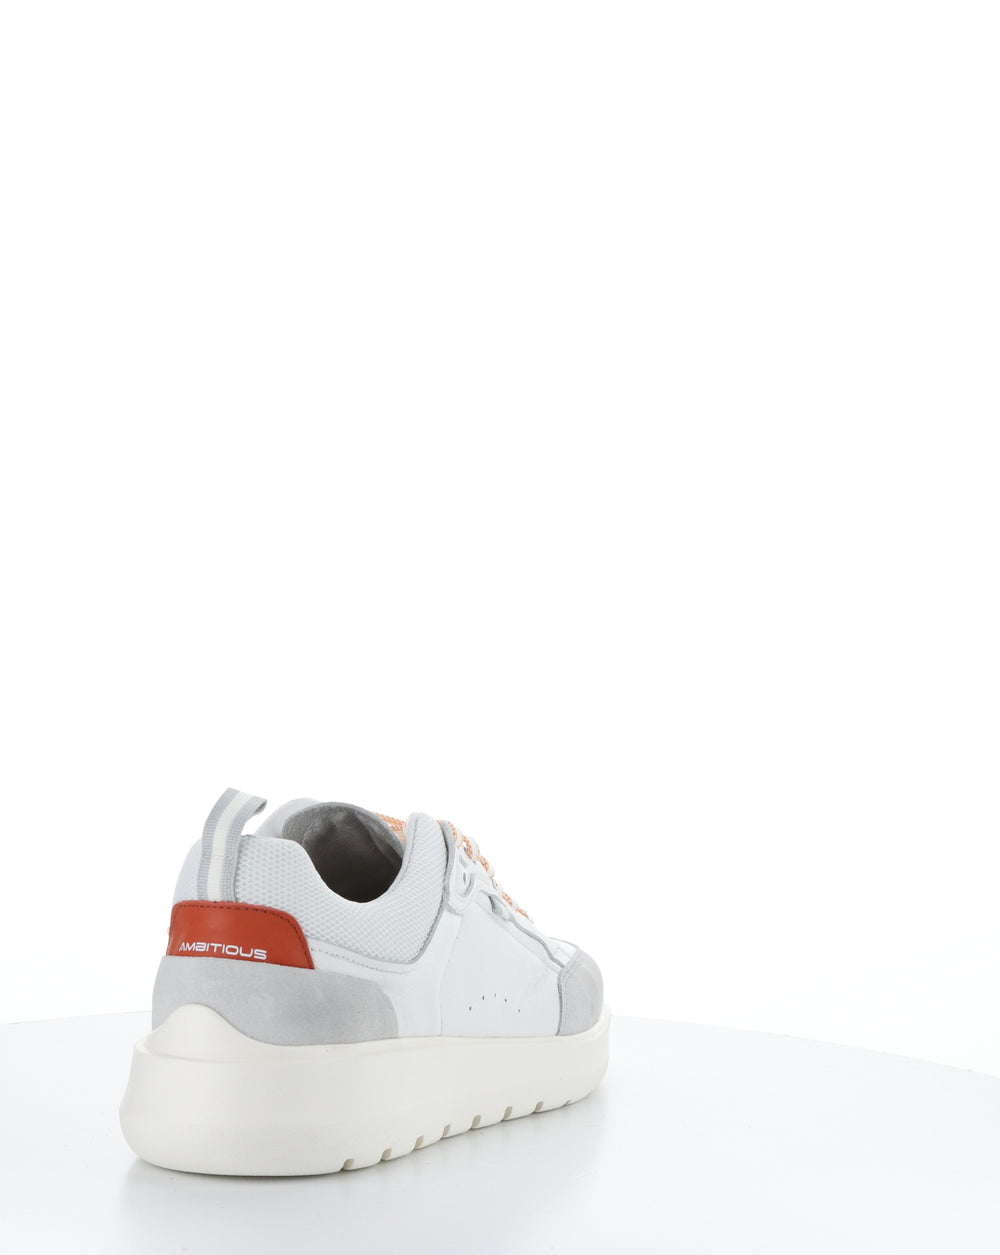 12806 WHITE/ORANGE Lace-up Shoes